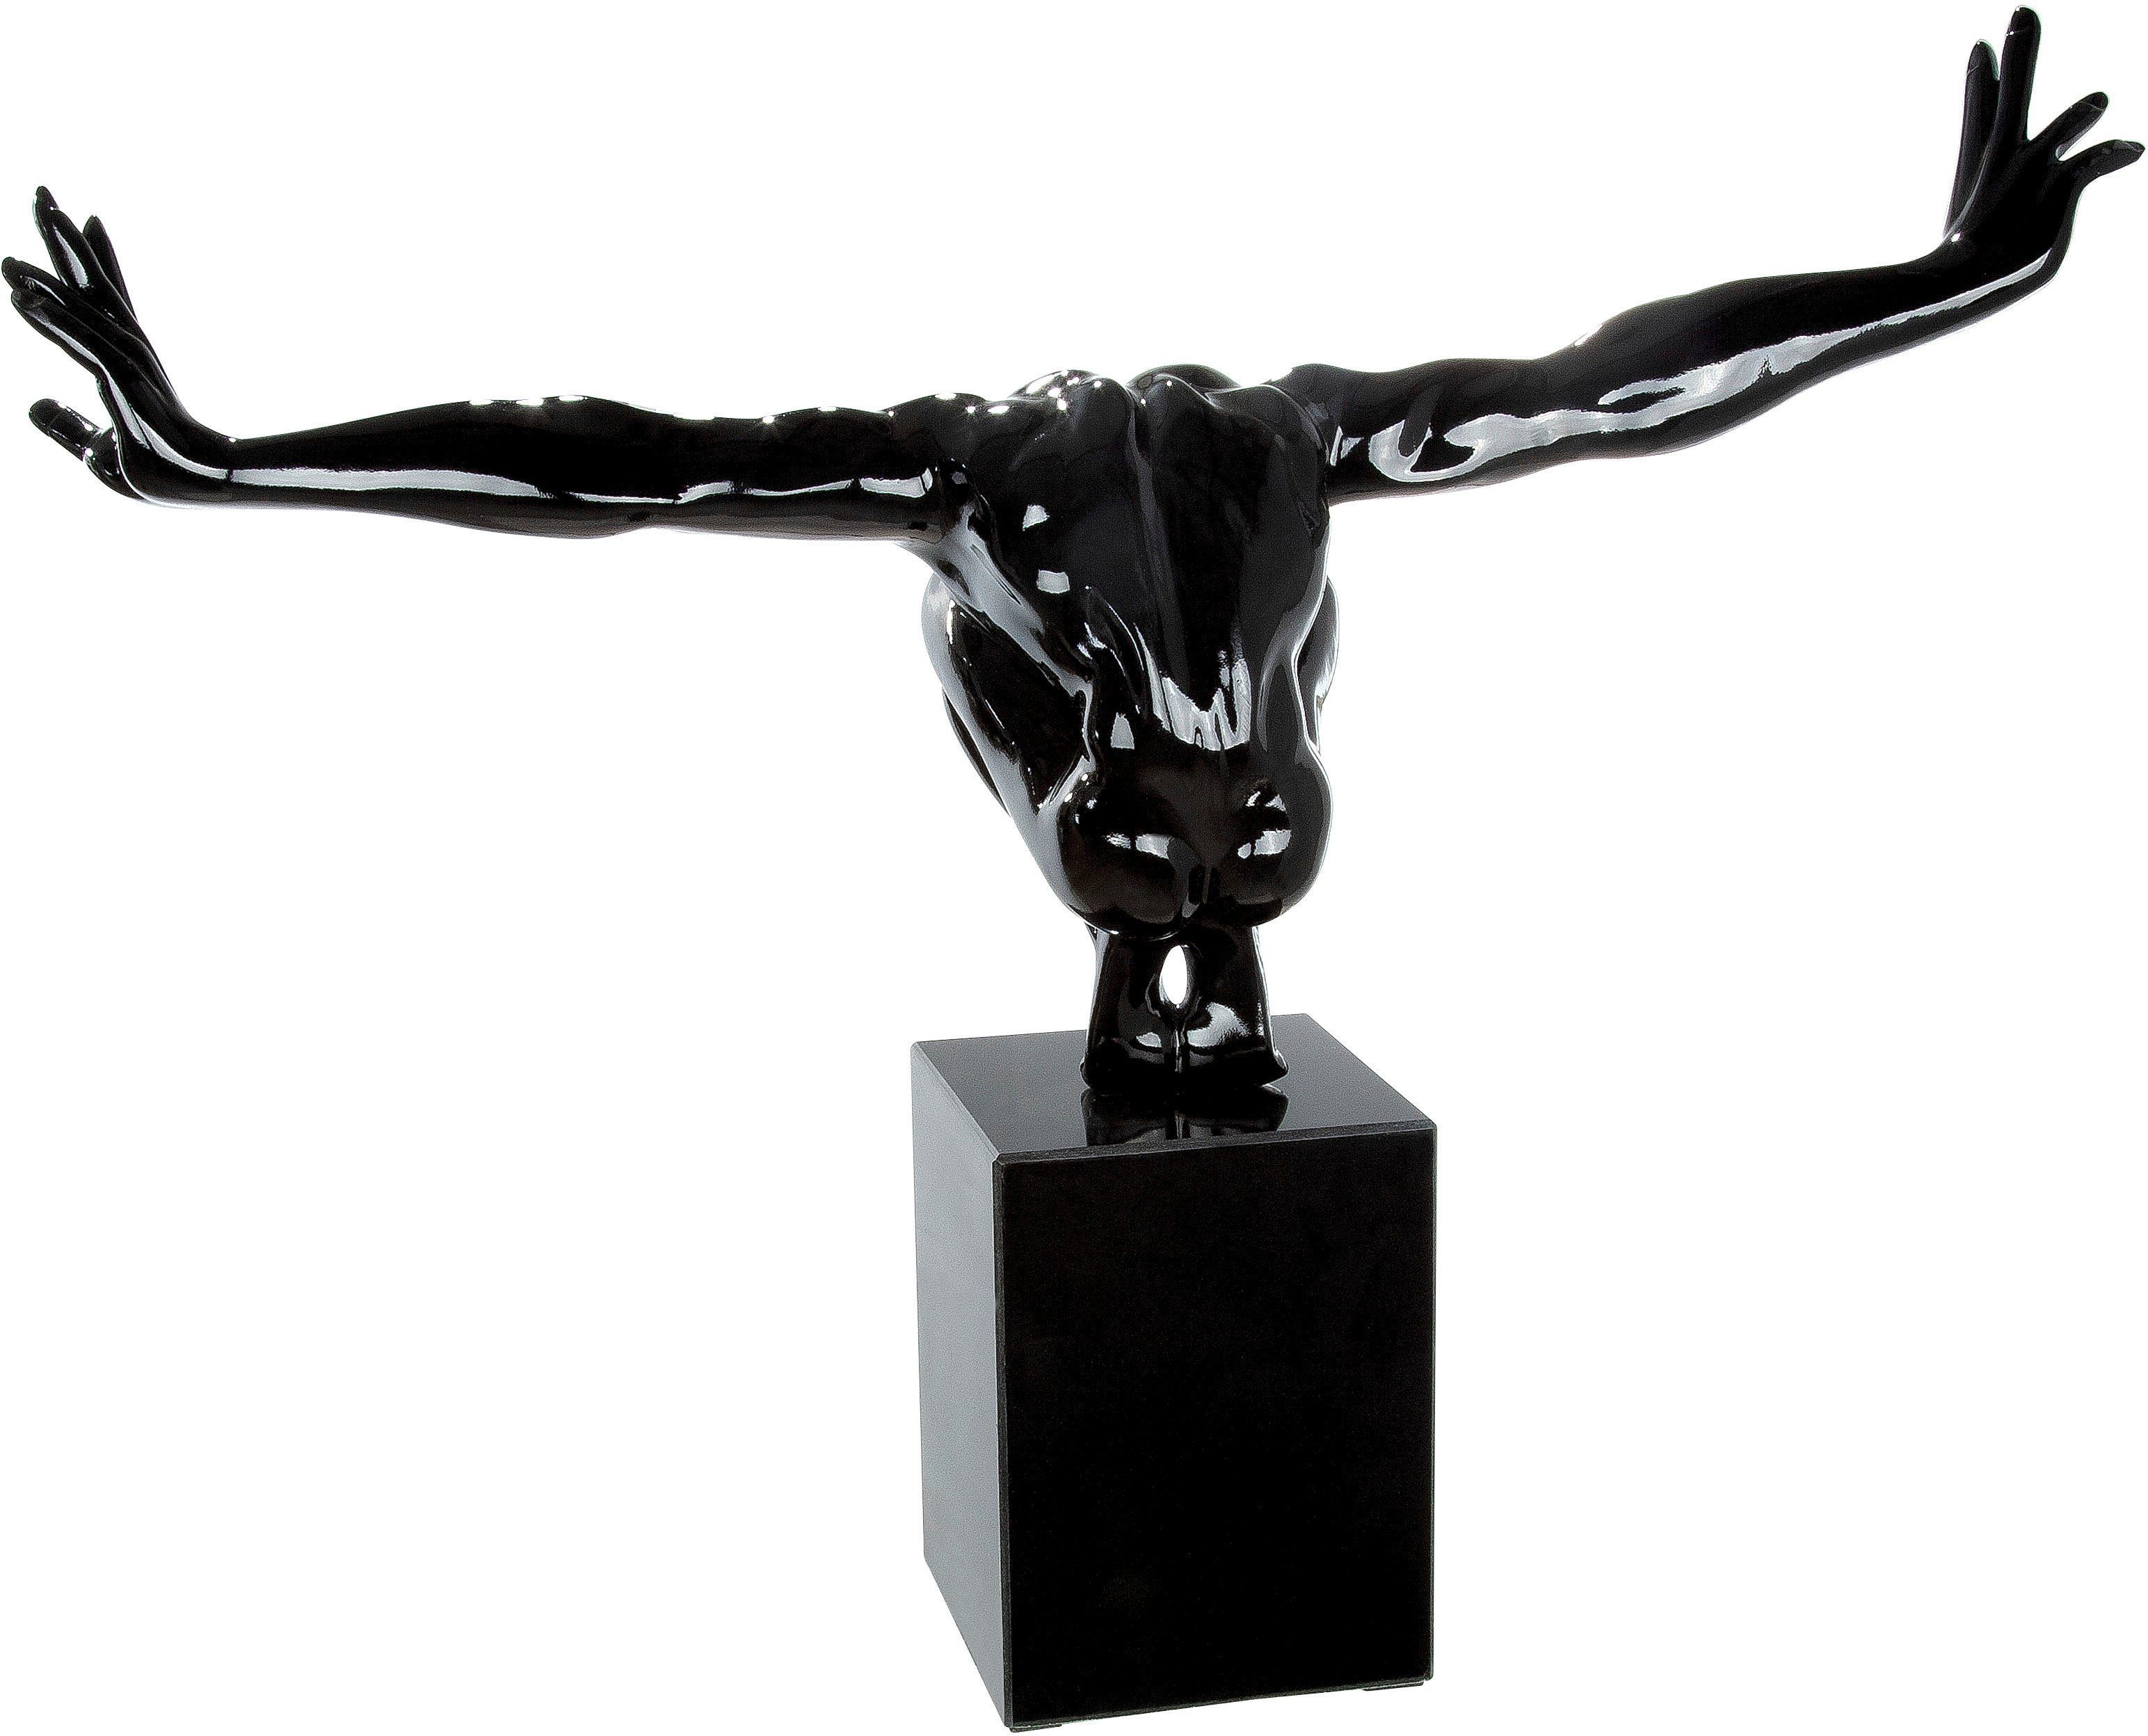 St), by schwarz auf Skulptur Marmorsäule (1 Skulptur Cliffhanger Gilde Casablanca